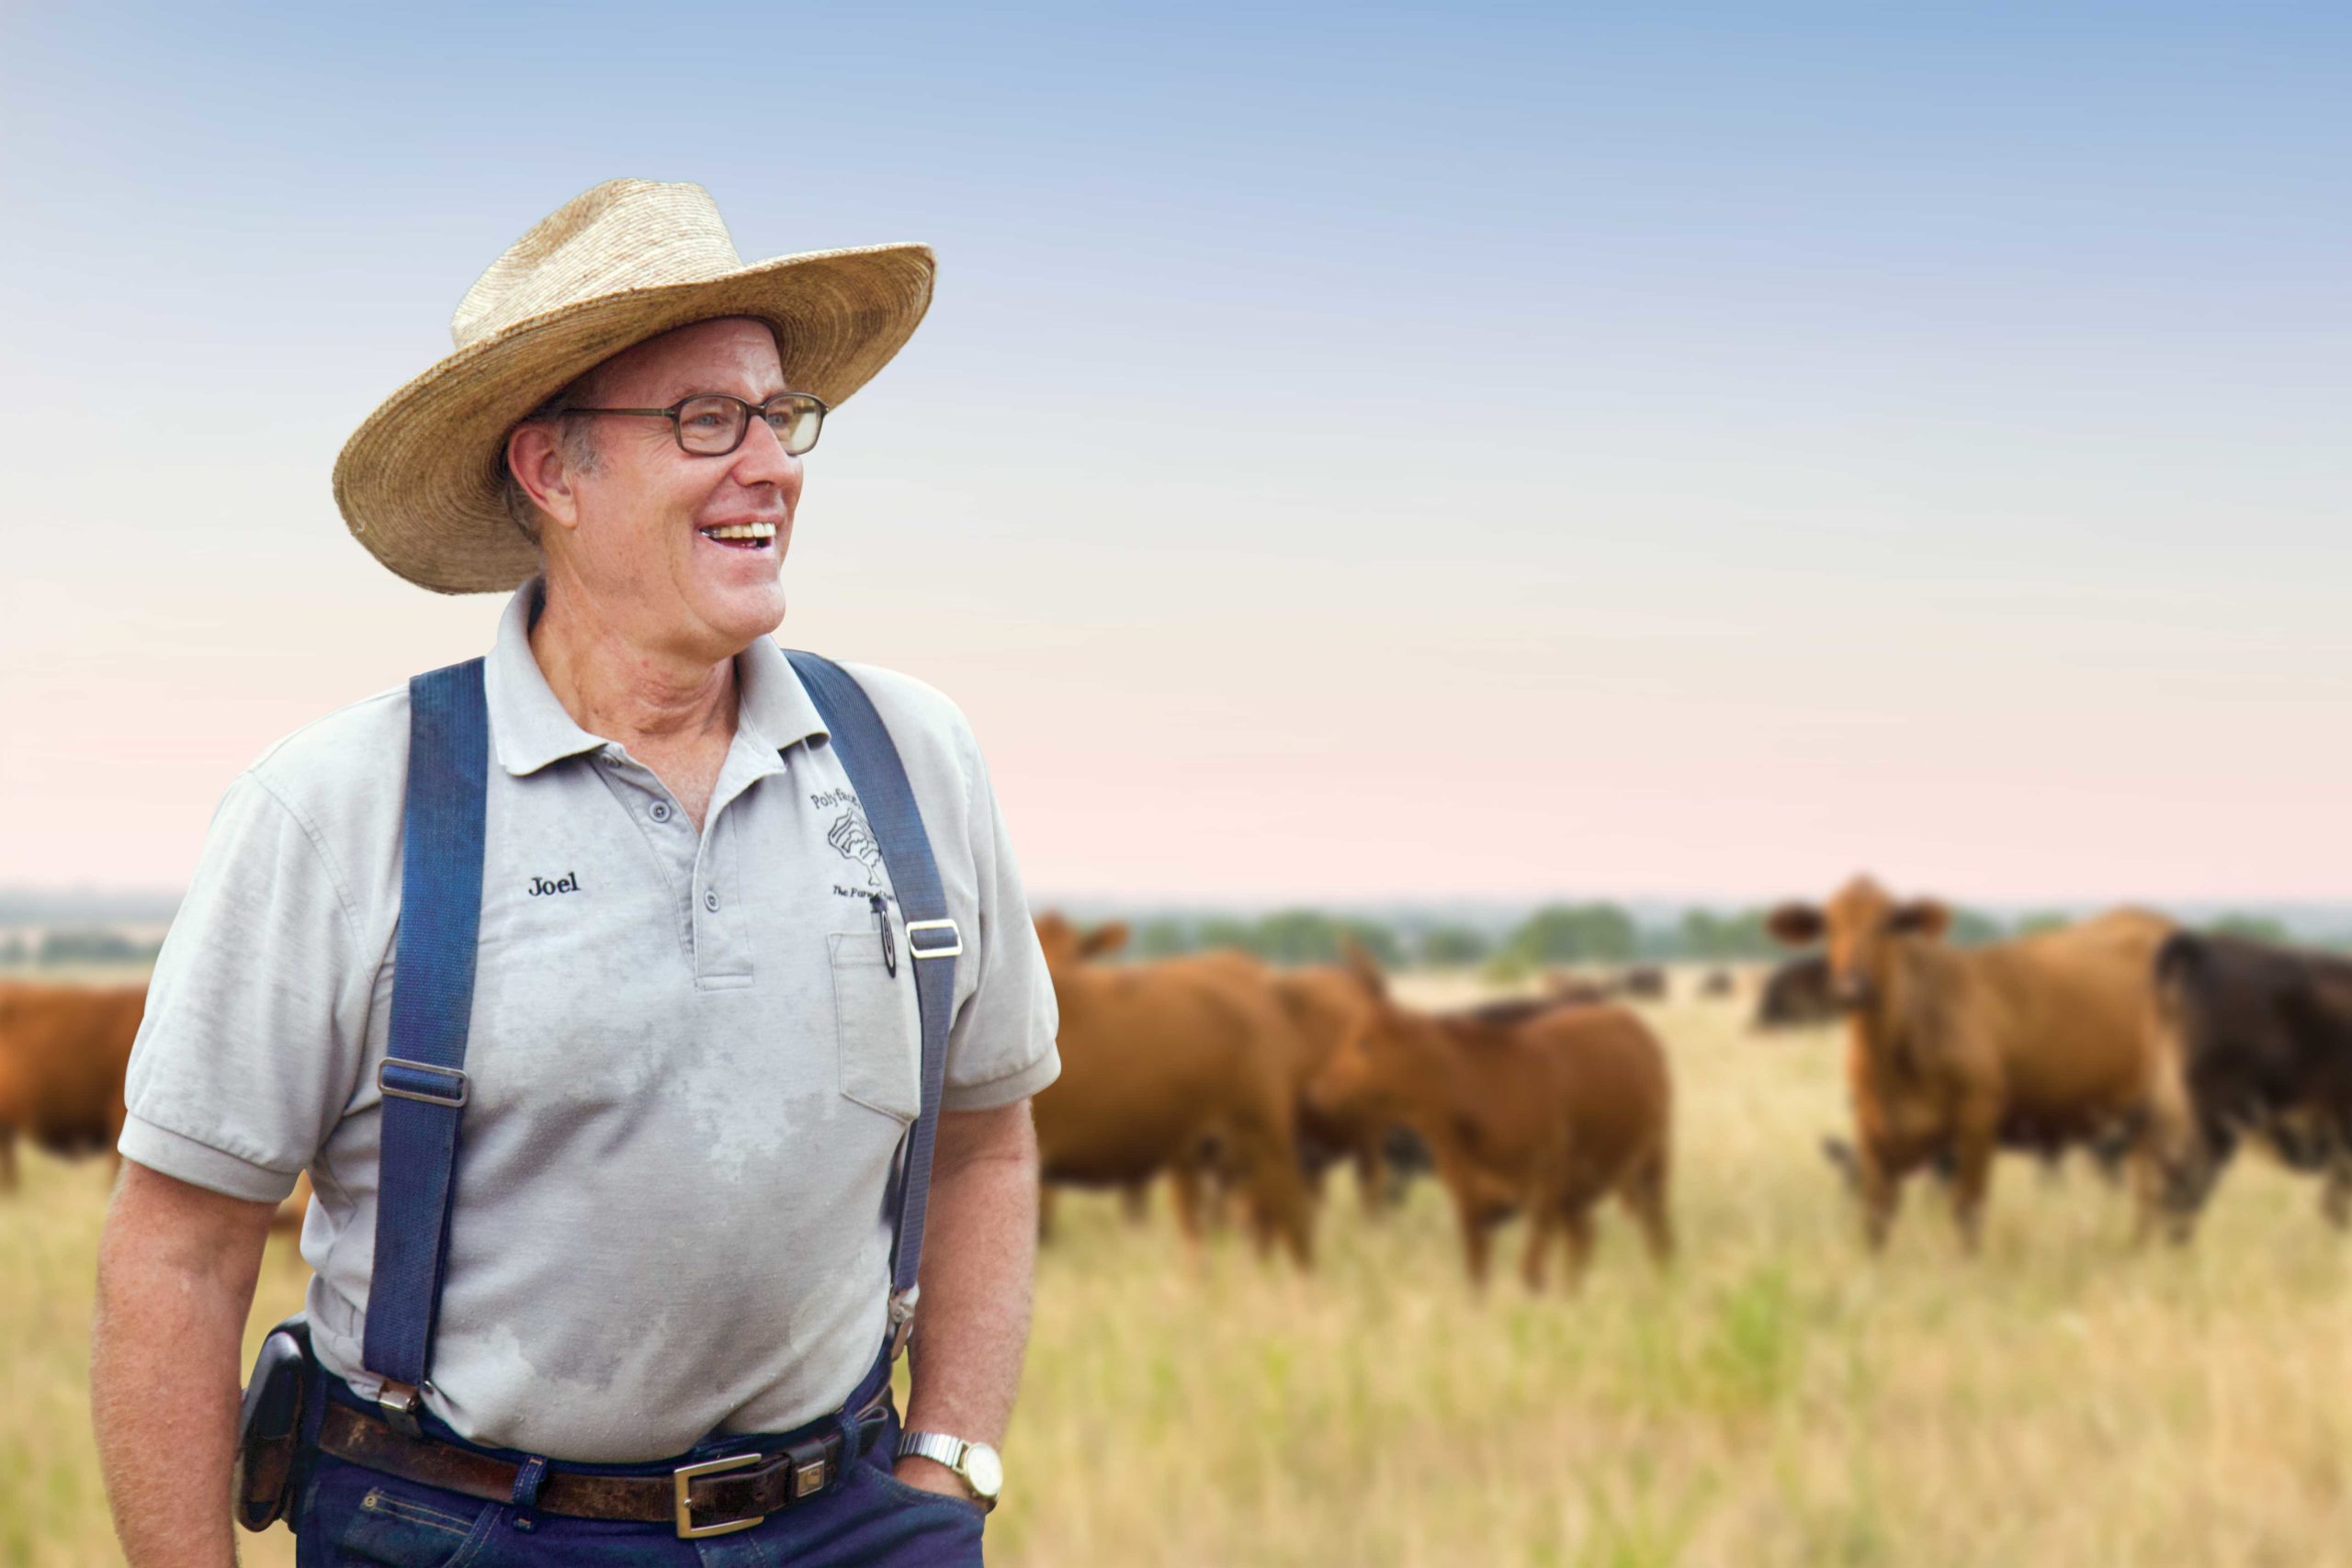 Joel Salatin in field of cattle on sunny day